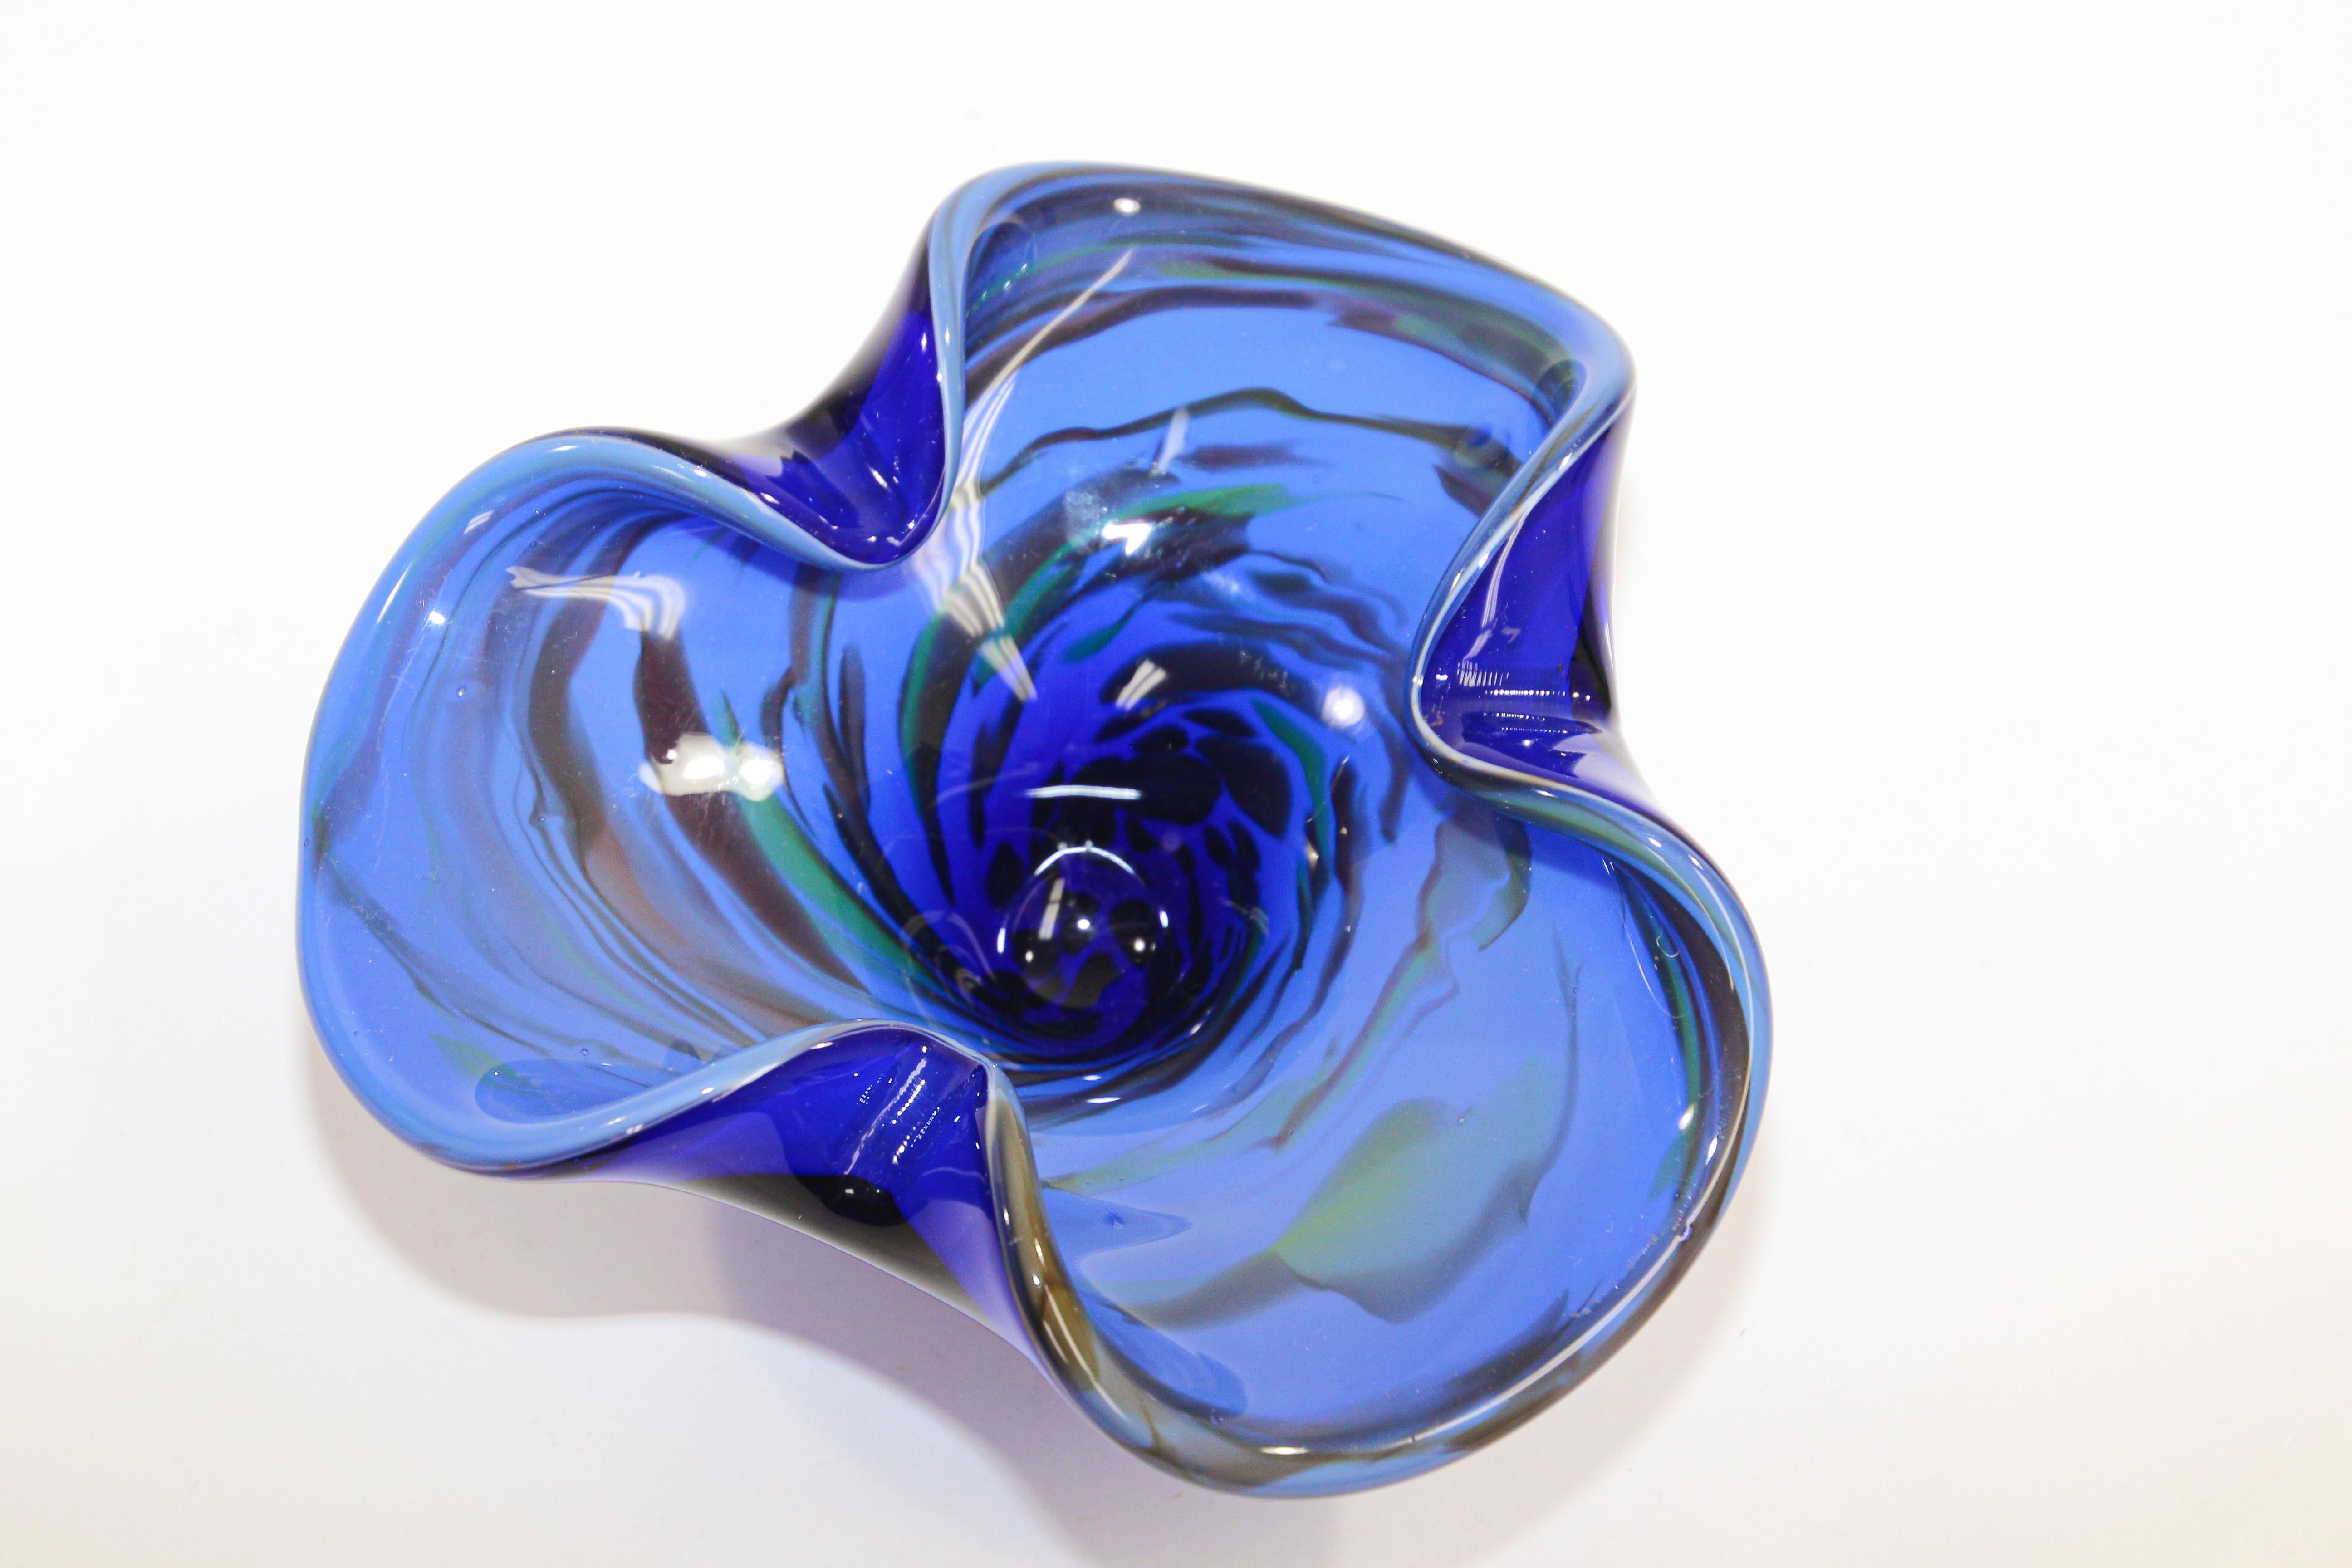 Splendida ciotola o posacenere vintage in vetro soffiato a mano di Murano a forma di fiore. 
Scultura organica a forma di fiore aperto in vetro artistico blu cobalto per posacenere.
Usalo come posacenere, vide poche o come ciotola decorativa o